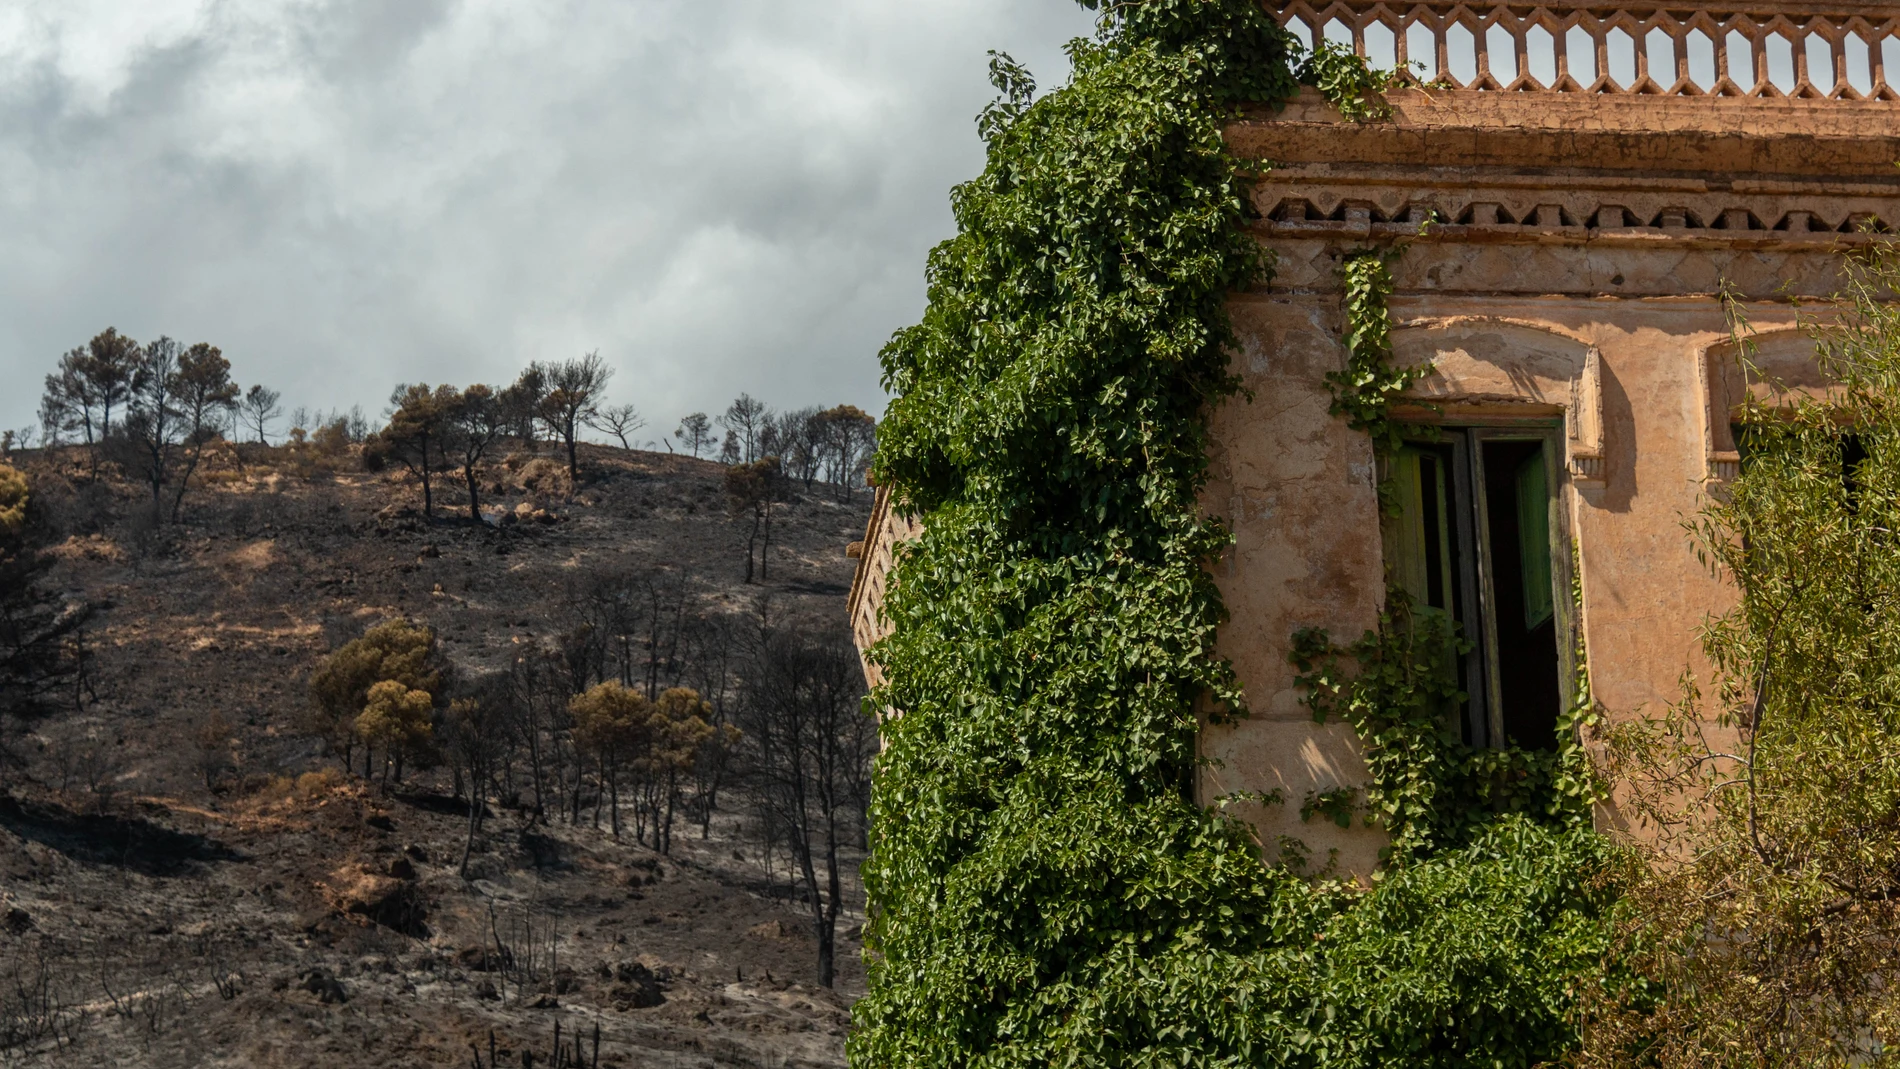 Vista general de la zona afectada por el incendio de Los Guájares (Granada). EFE/Alba Feixas